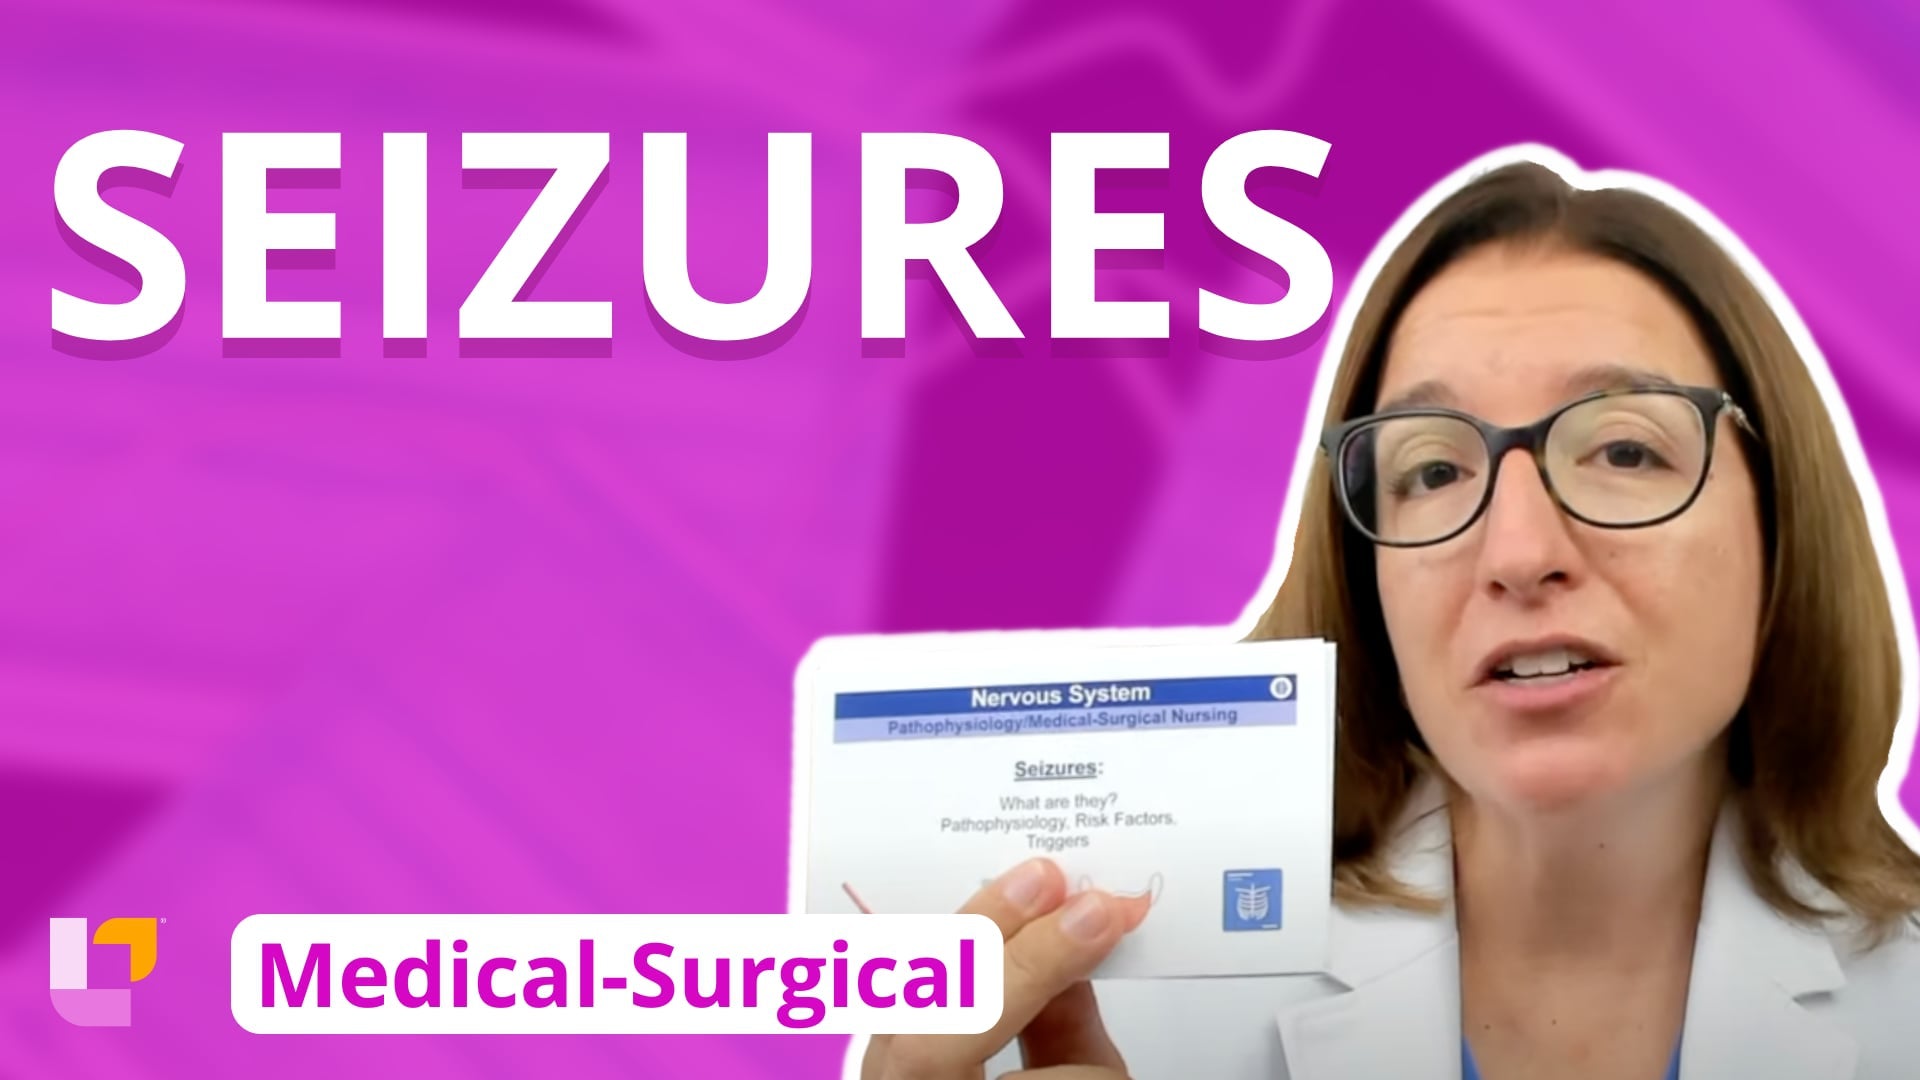 Med-Surg - Nervous System, part 7: Seizures - LevelUpRN